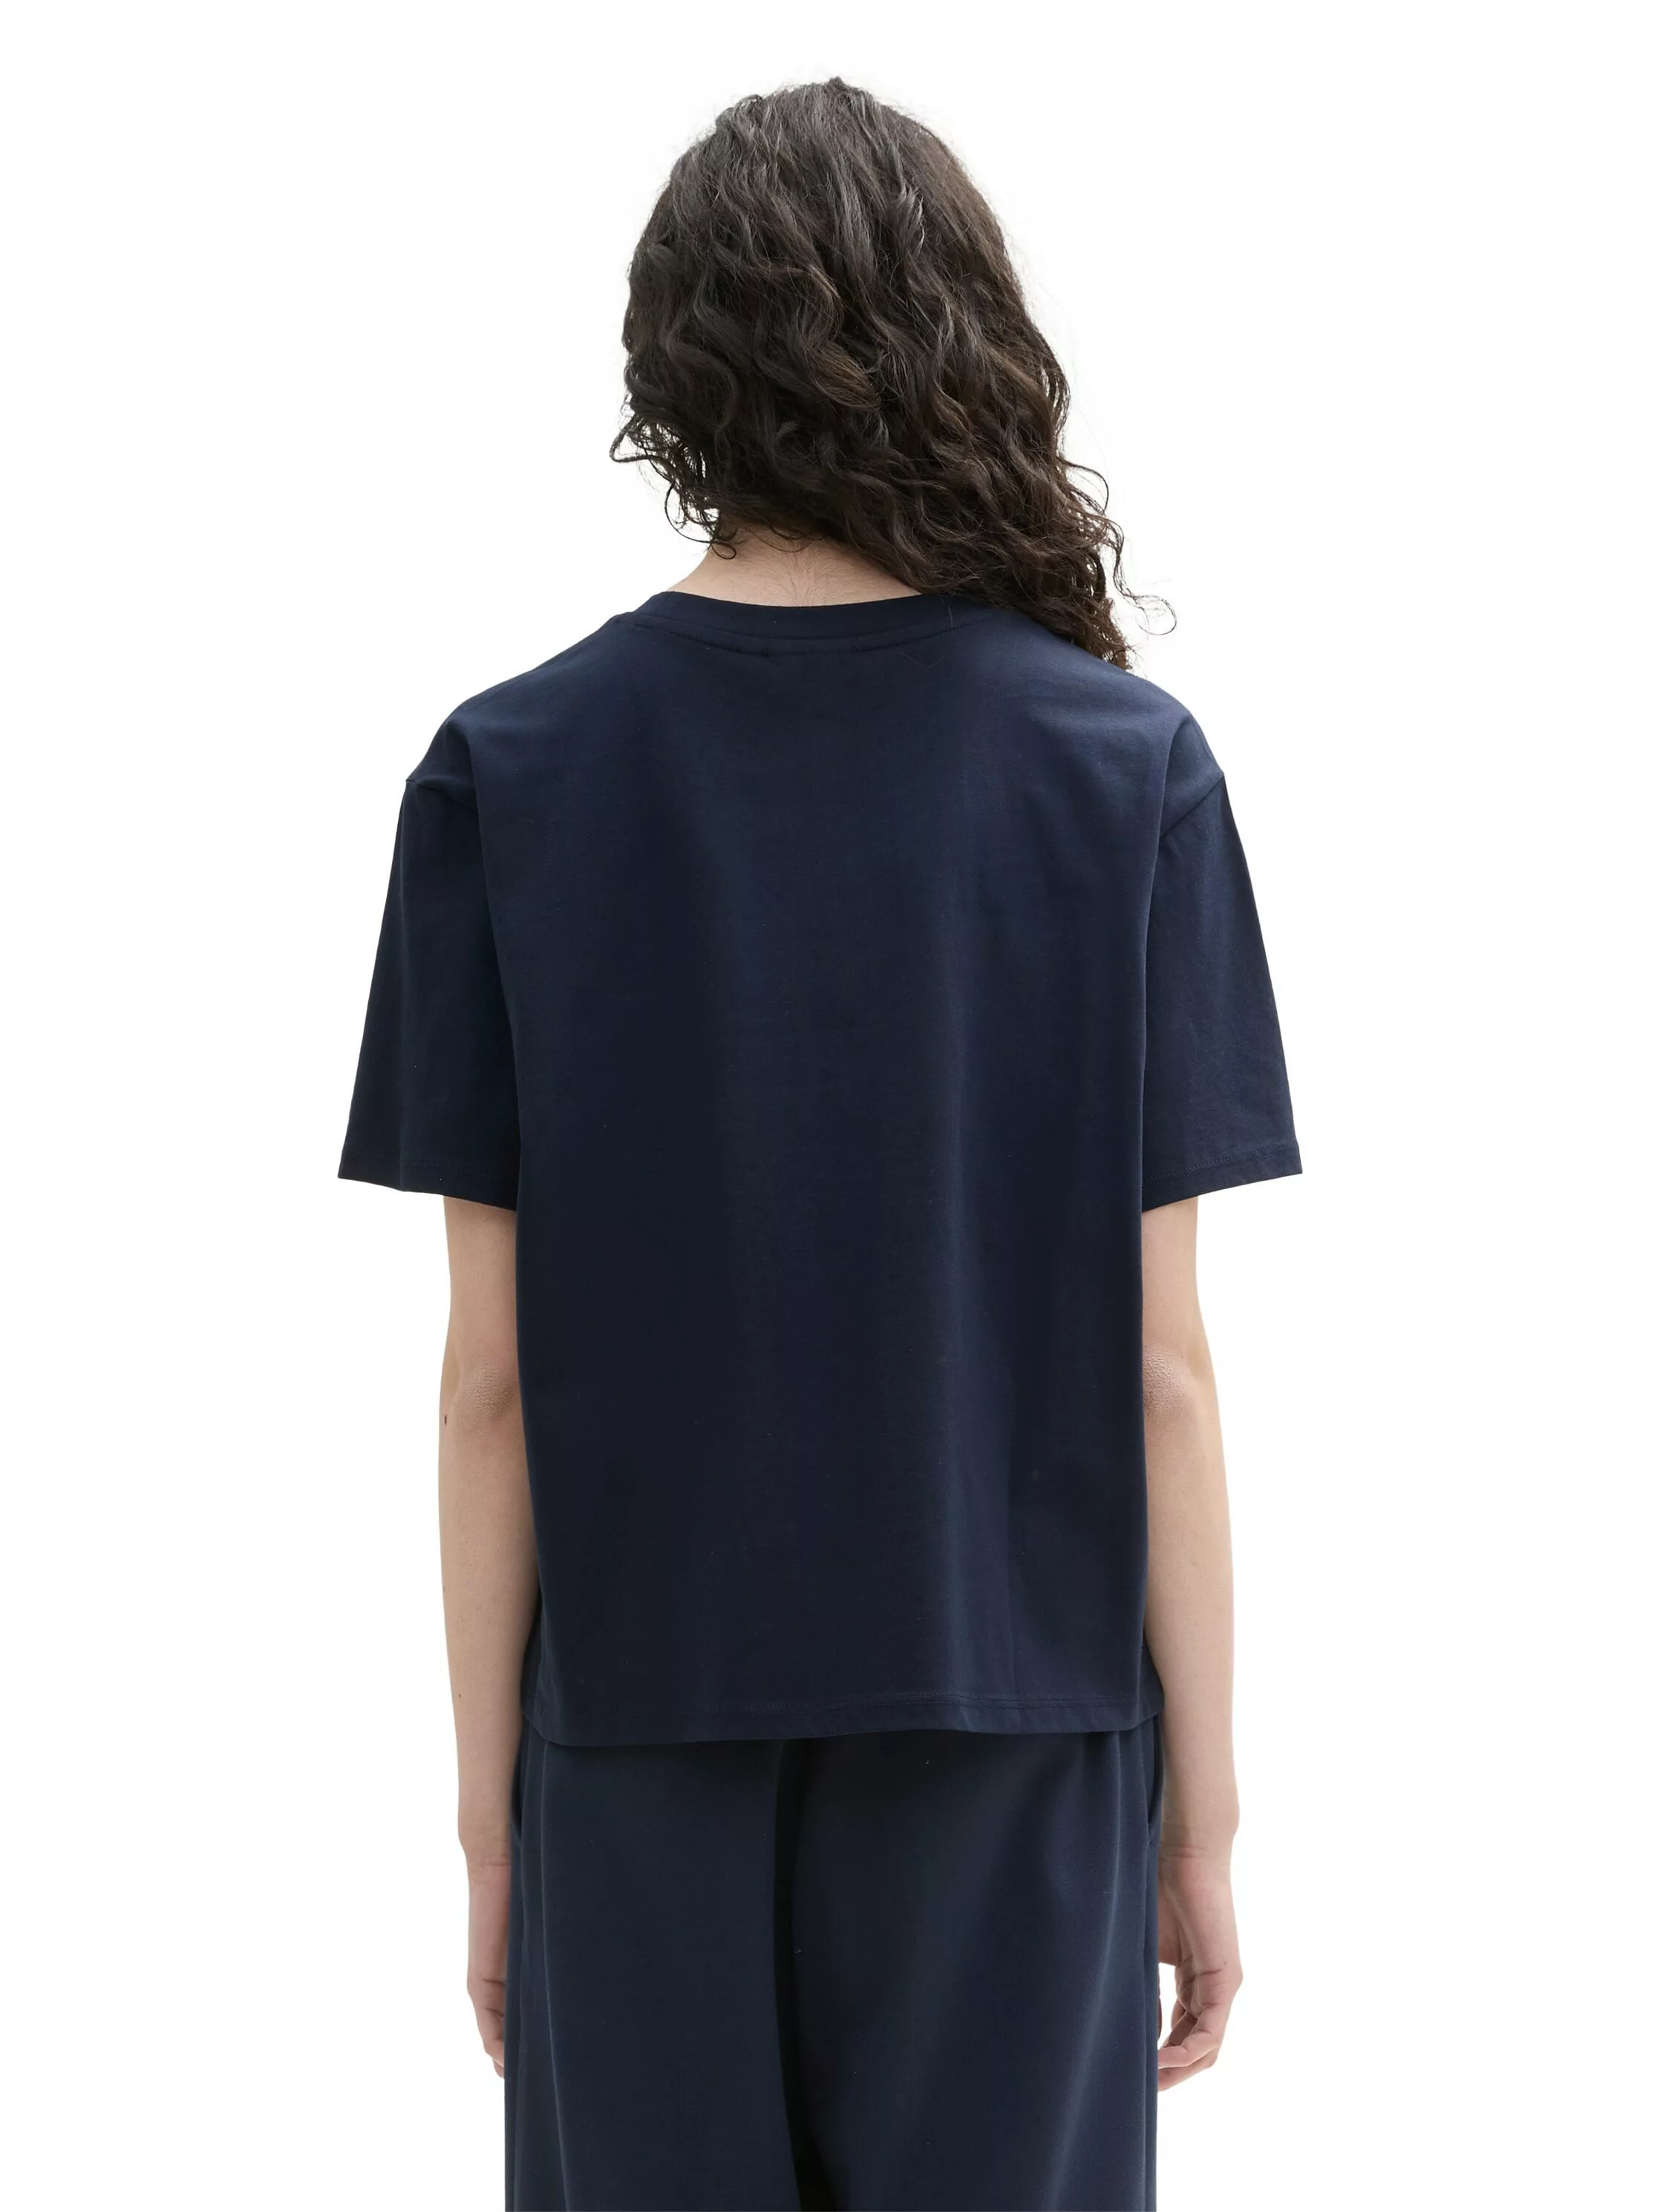 TOM TAILOR Denim T-Shirt Boxy aus reiner Baumwolle günstig online kaufen